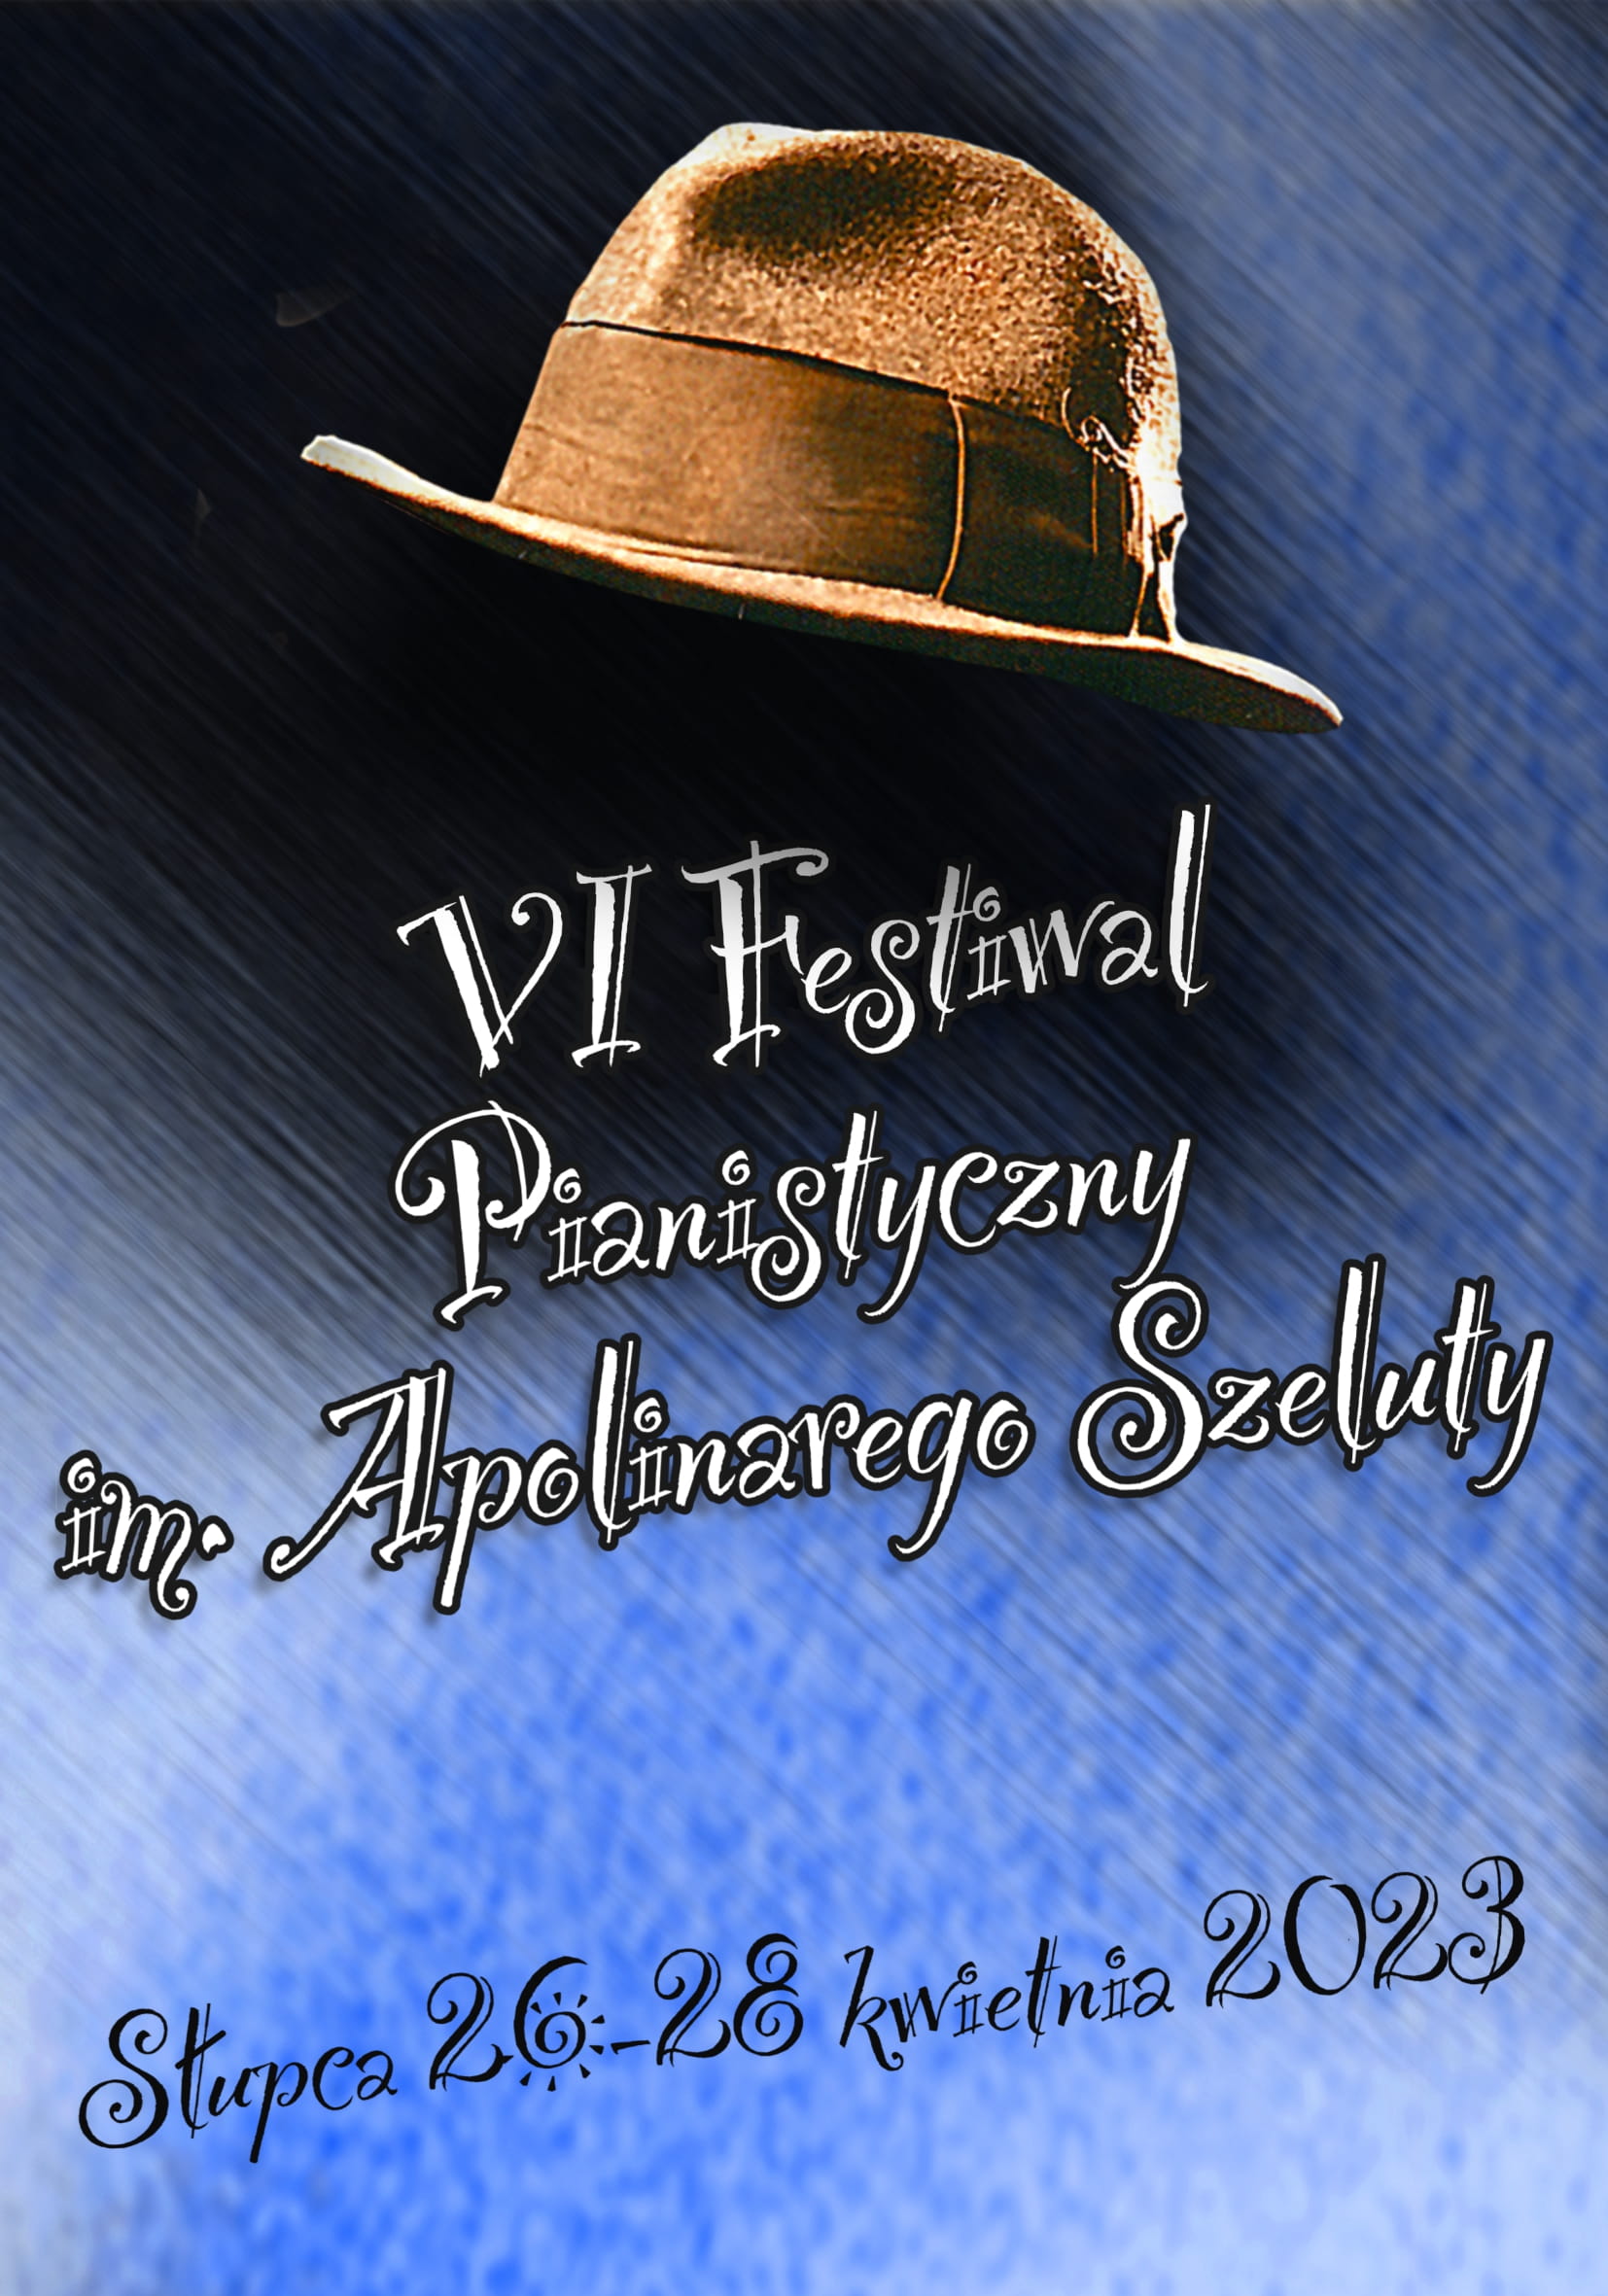 plakat pionowy z informacjami o festiwalu pianistycznym, ikonografia kapelusza, całość na czarno-niebieskim tle